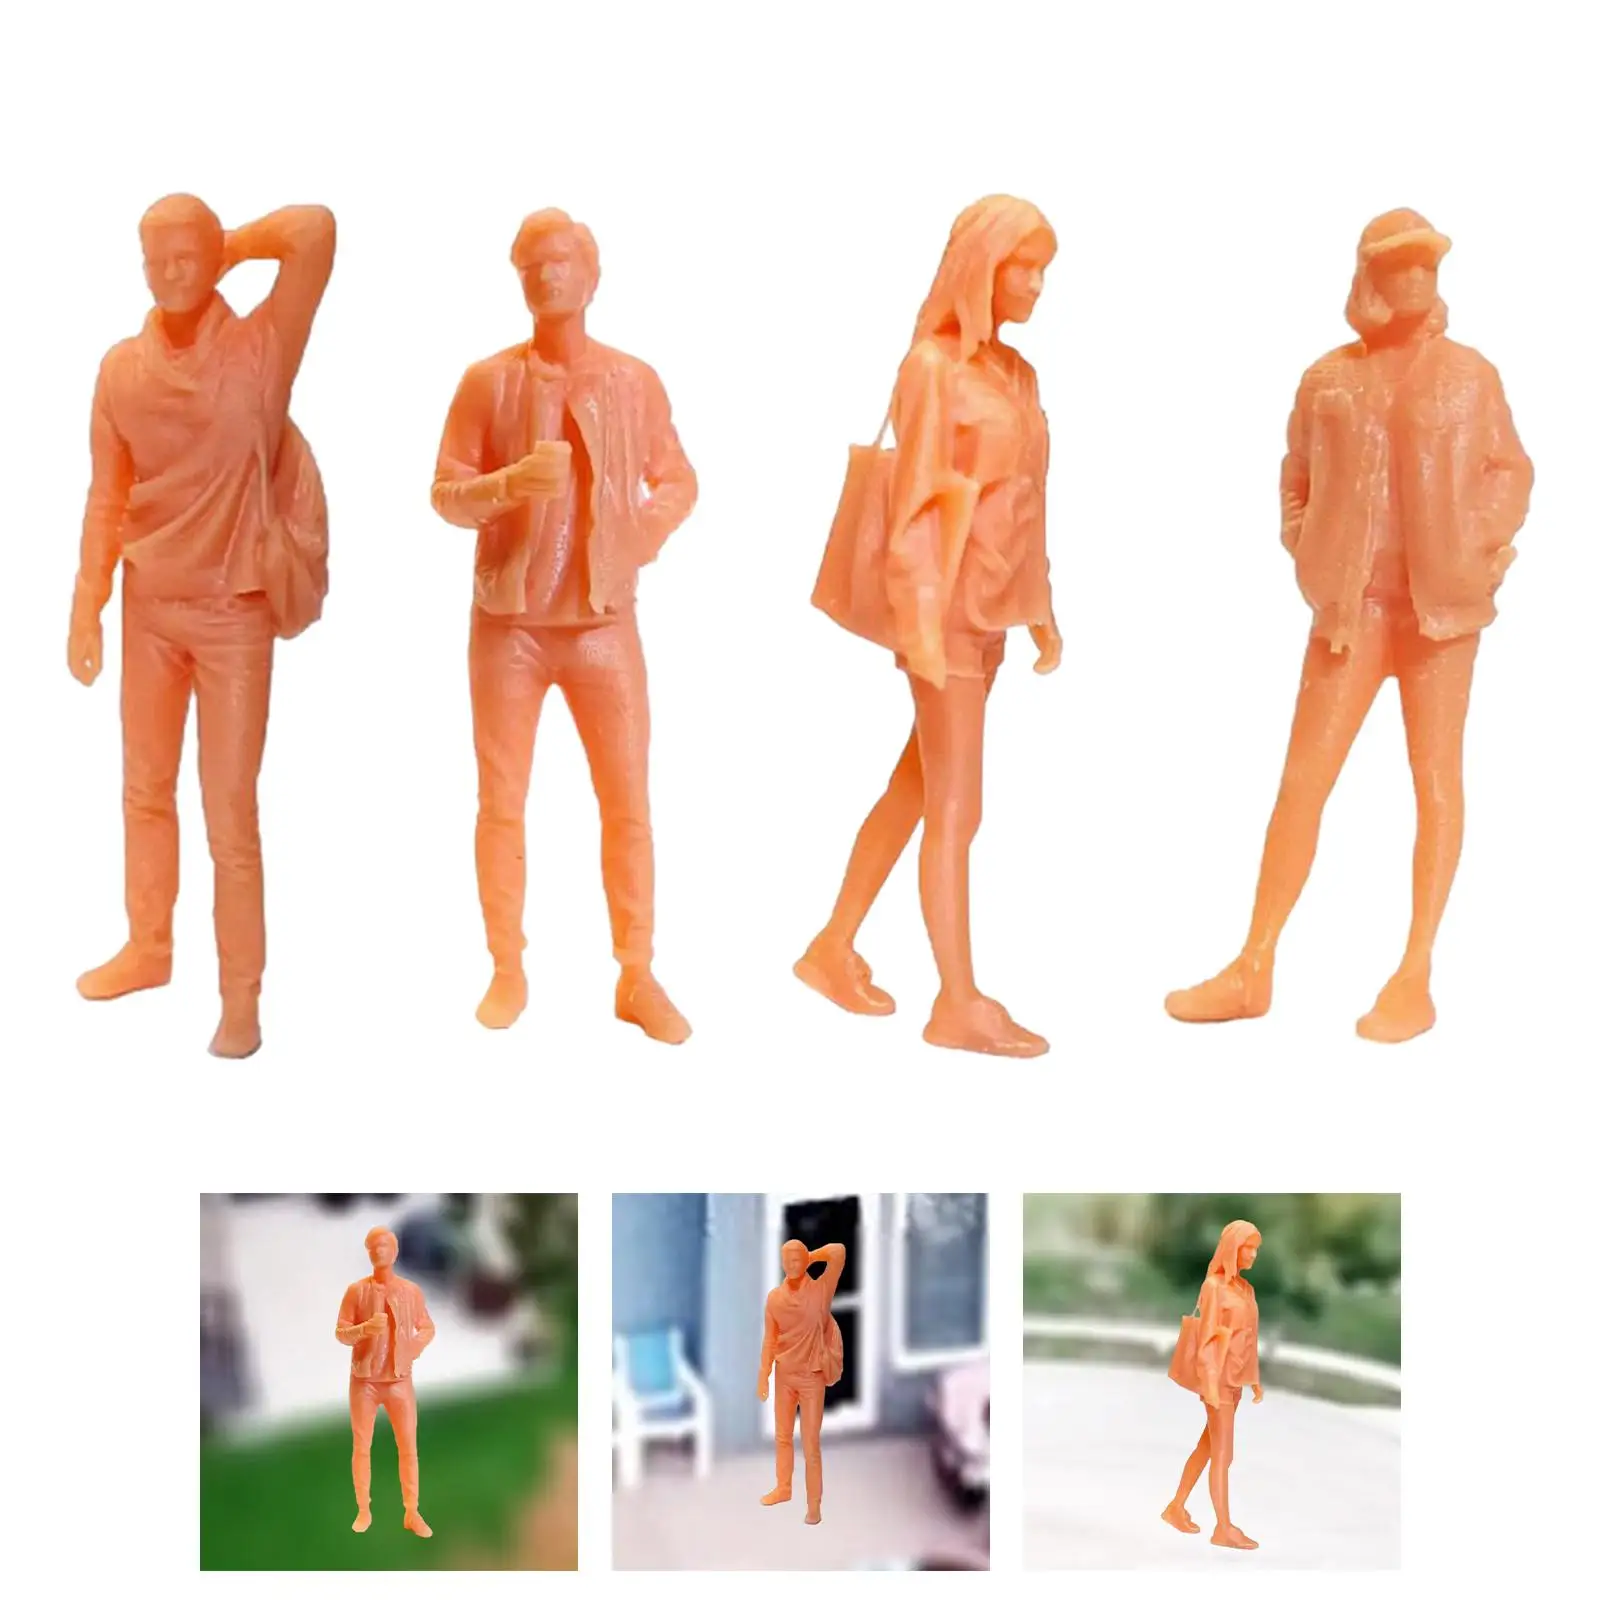 1/64 Diorama Figure Resin Model Building Kits Fairy Garden Architecture Model People Figurines Miniature Scene Decor Accessories